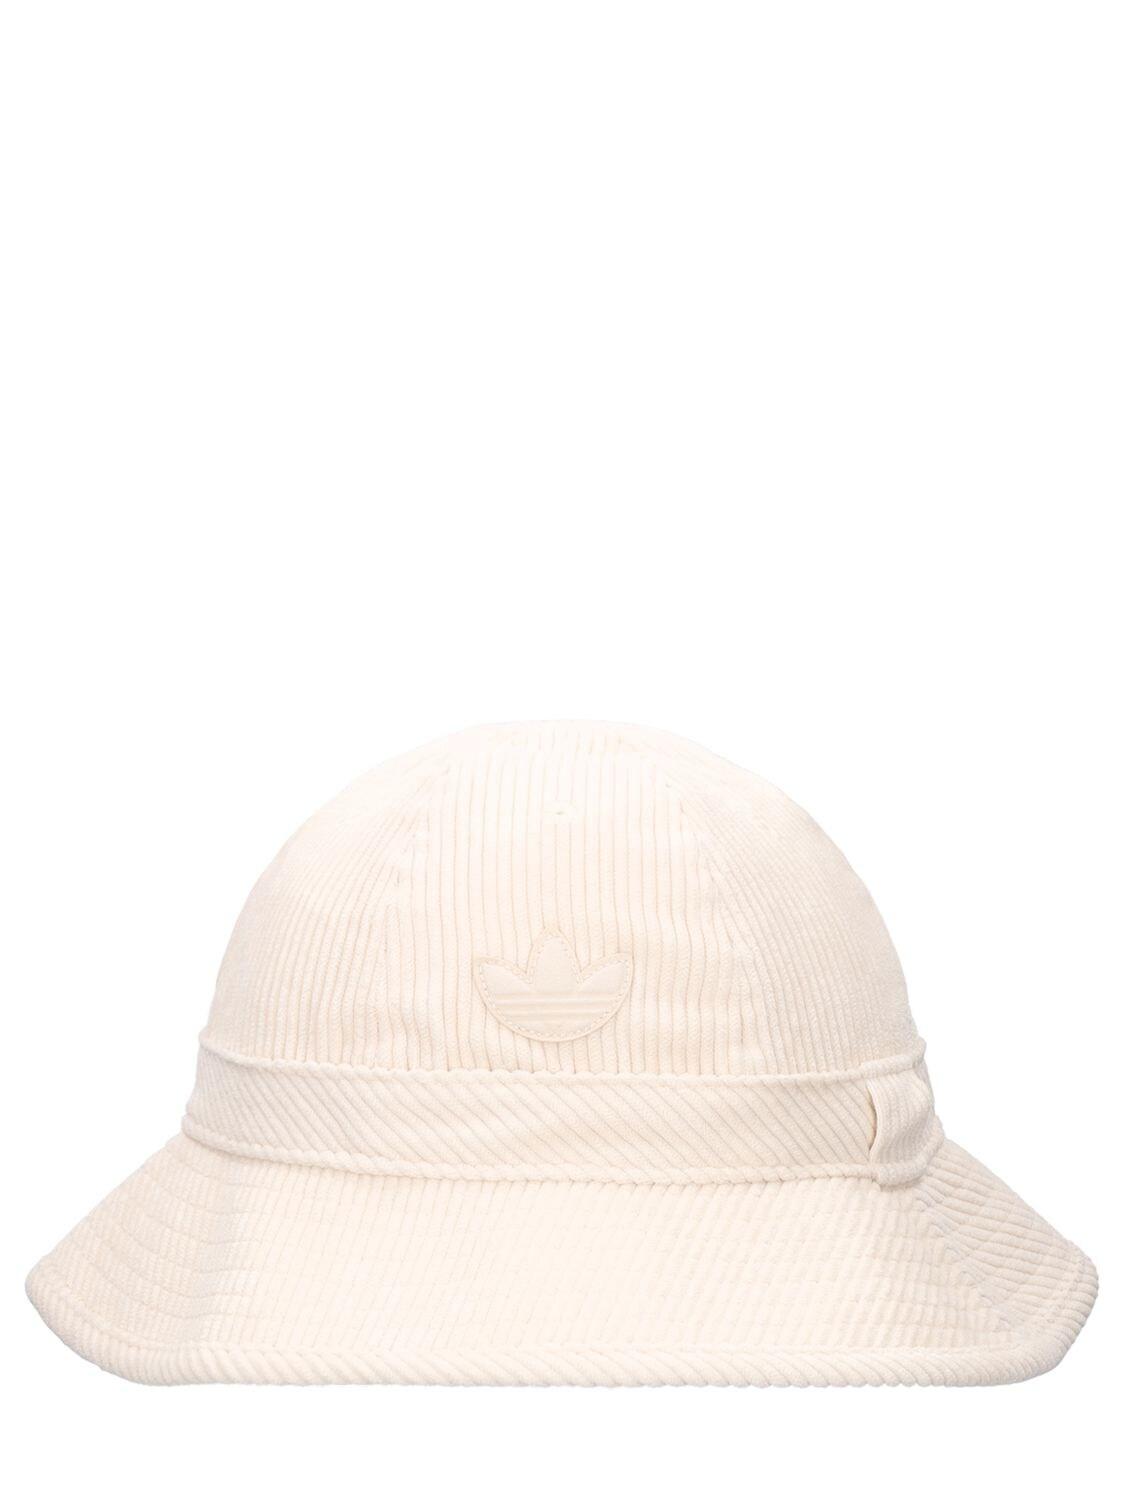 adidas Originals Corduroy Bucket Hat in Beige/White (Natural) | Lyst